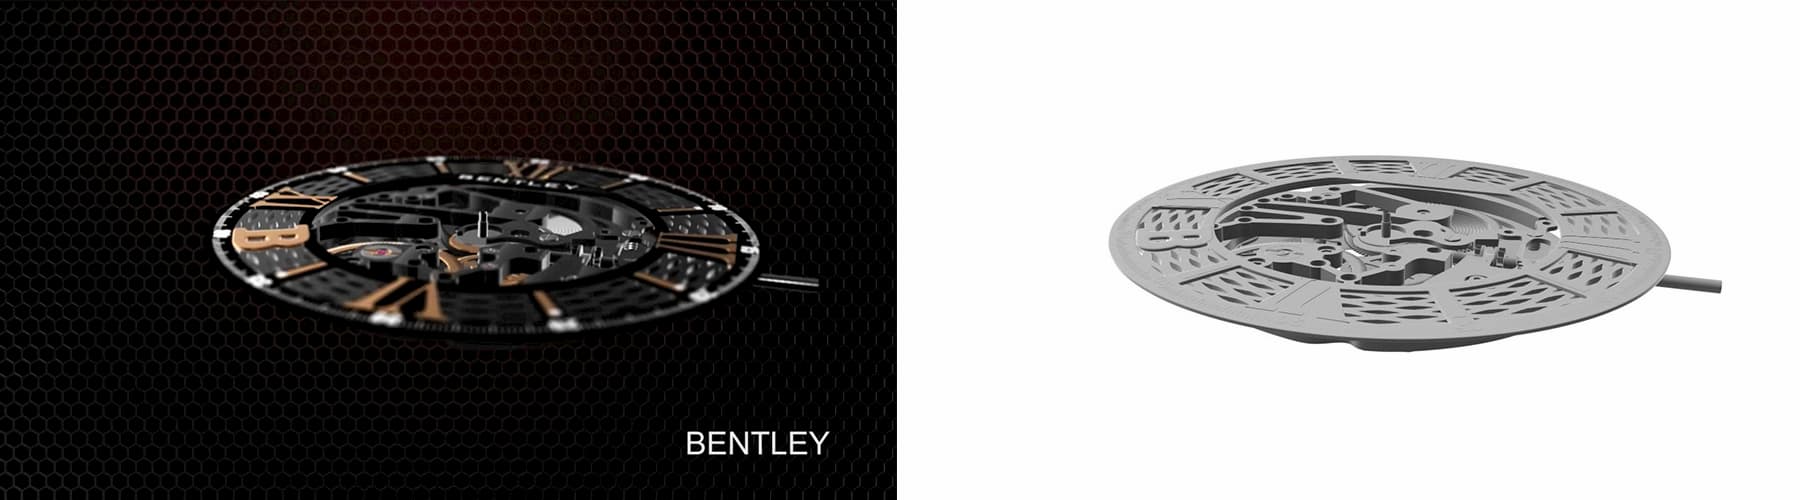 BENTLEY機械錶3D動畫影片-3